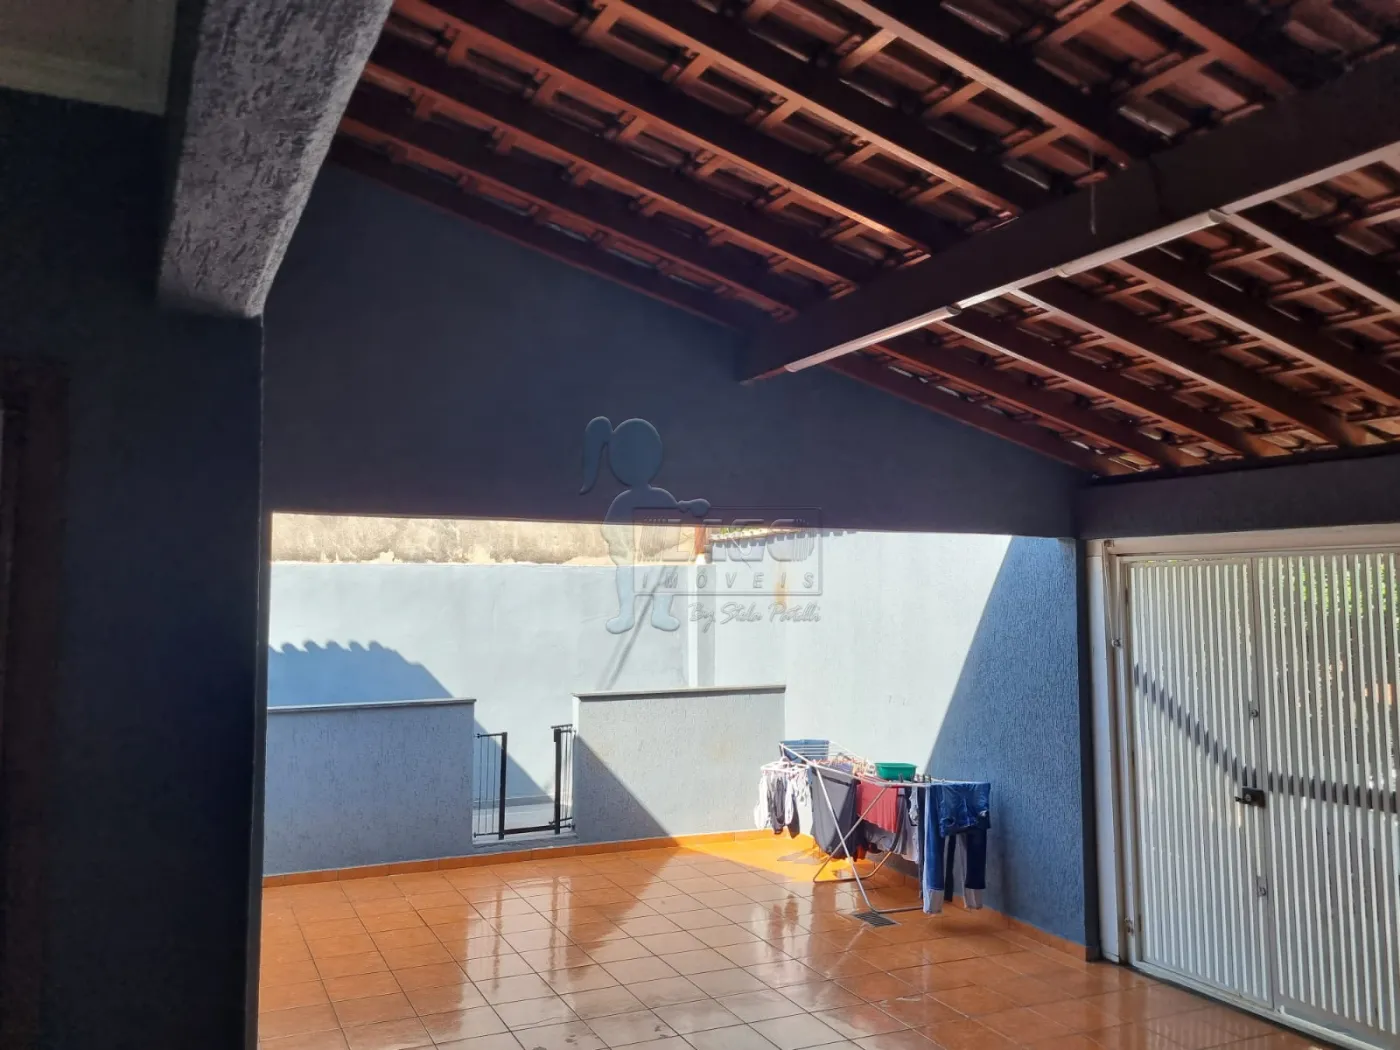 Comprar Casas / Padrão em Ribeirão Preto R$ 265.000,00 - Foto 29